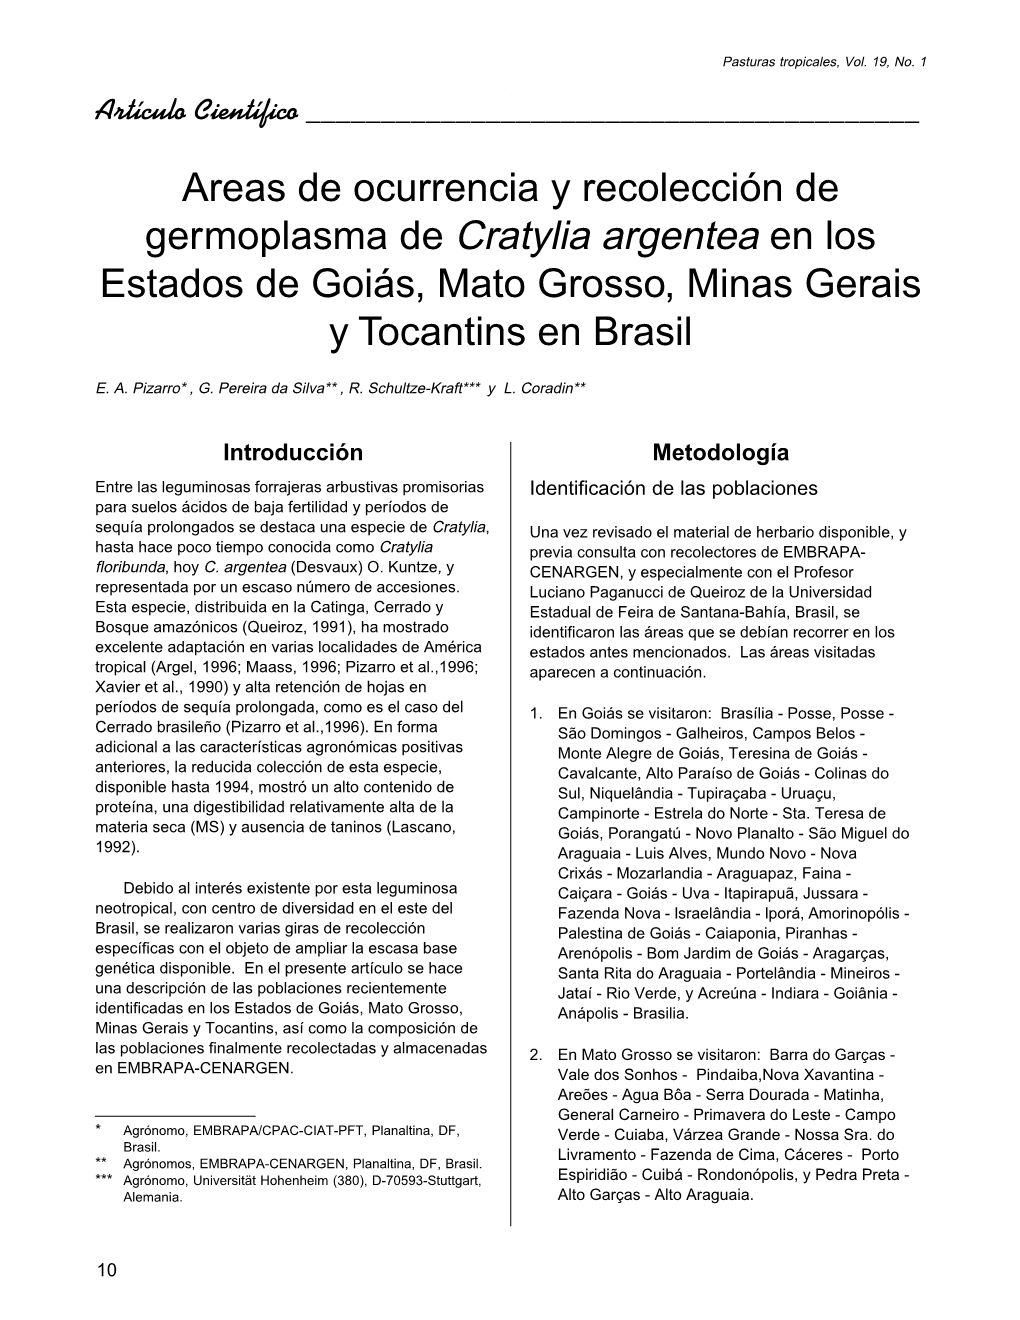 Areas De Ocurrencia Y Recolección De Germoplasma De Cratylia Argentea En Los Estados De Goiás, Mato Grosso, Minas Gerais Y Tocantins En Brasil